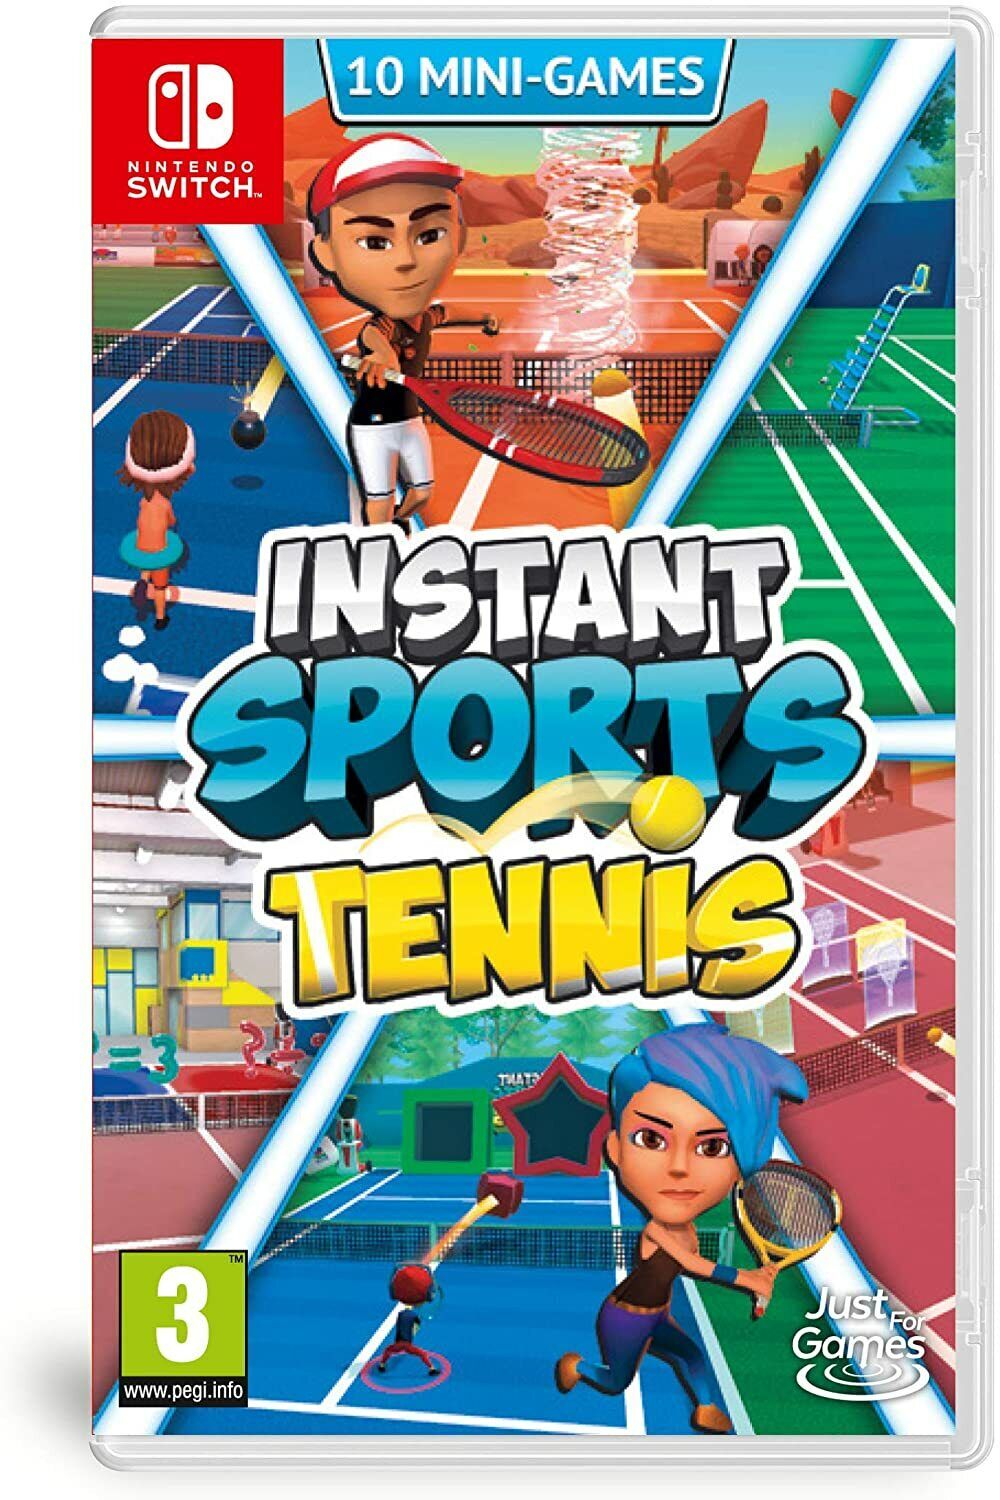 Instant Sports Tennis - Nintendo Switch saynama